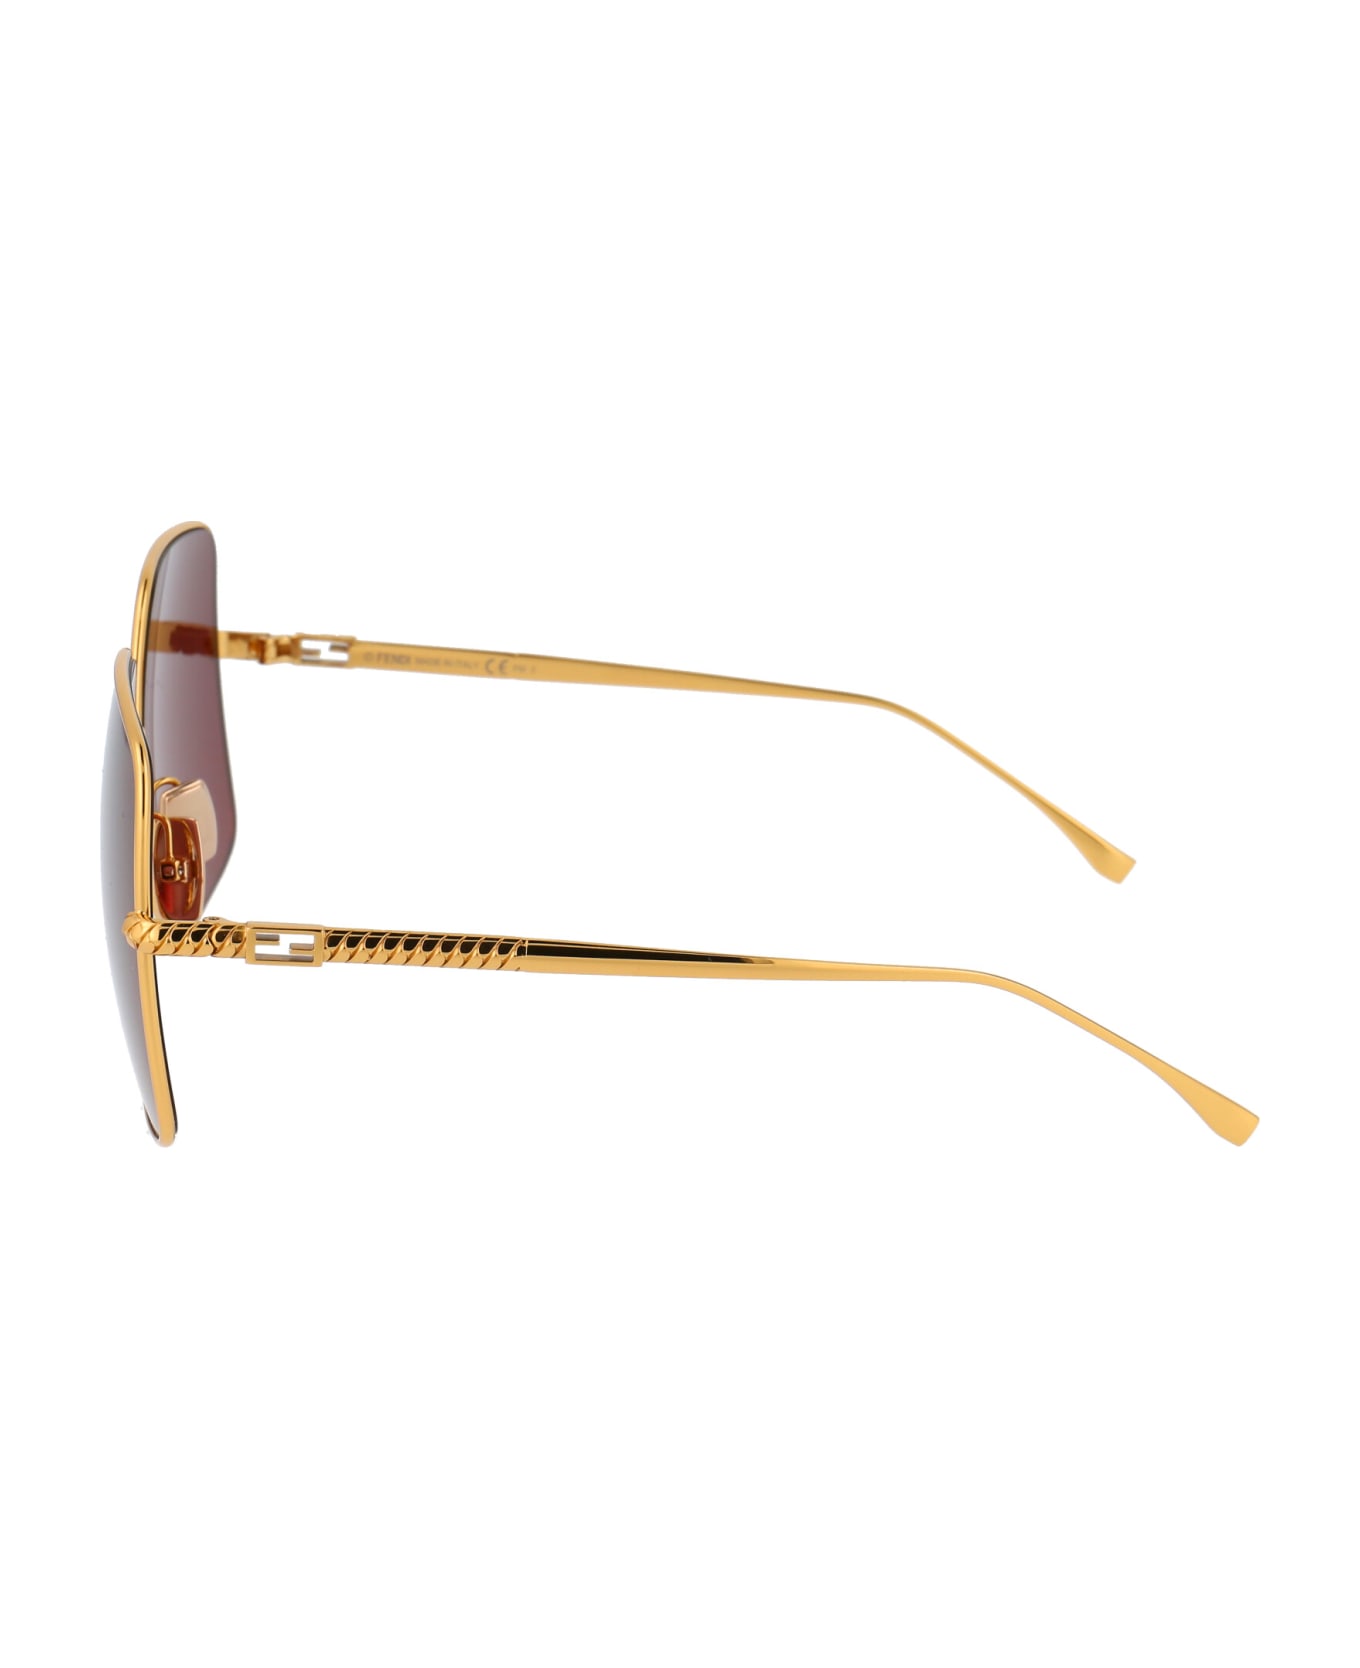 Fendi Eyewear Ff 0439/s Sunglasses - 001U1 YELLOW GOLD